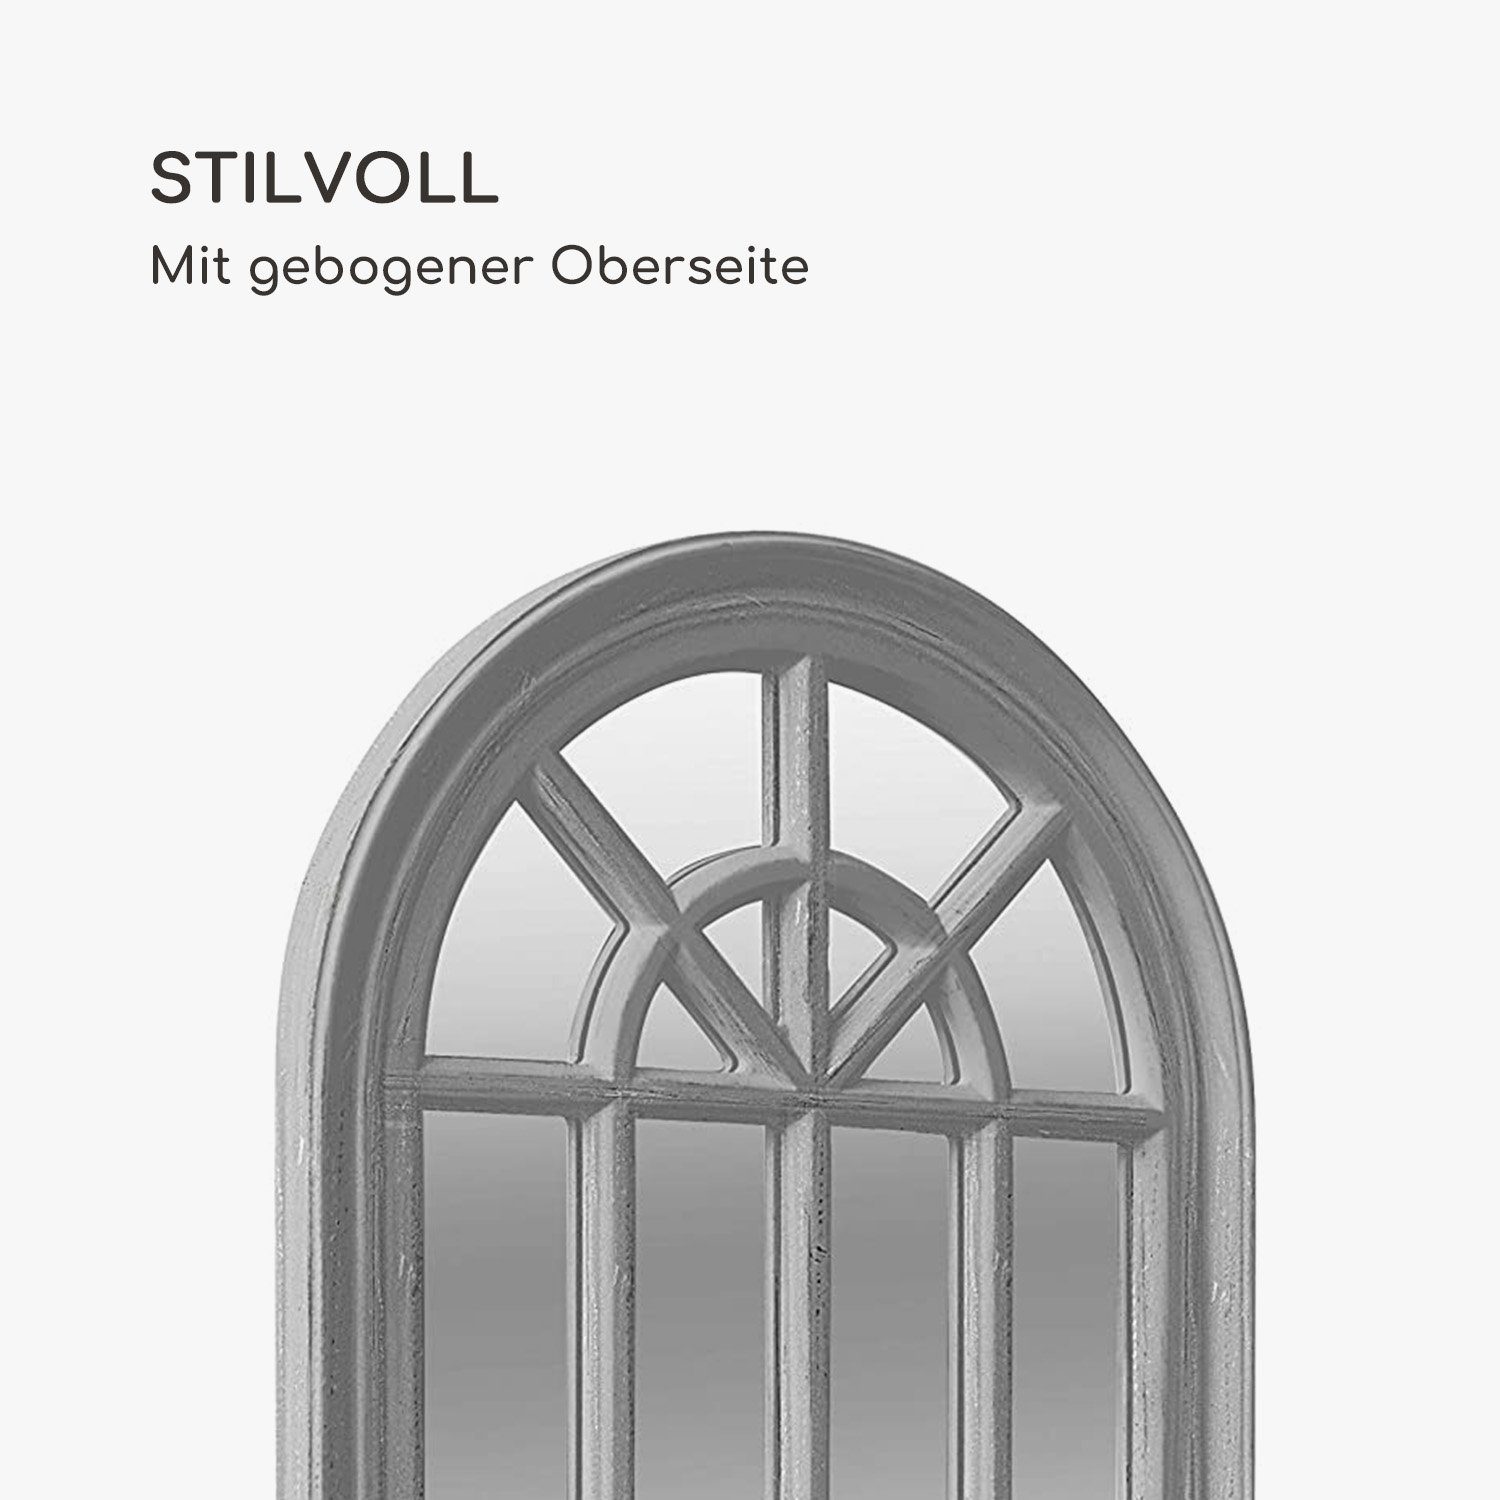 Spiegel Casa 46 cm Grau Savile 86 | Französischer Chic Fensterspiegel x Grau